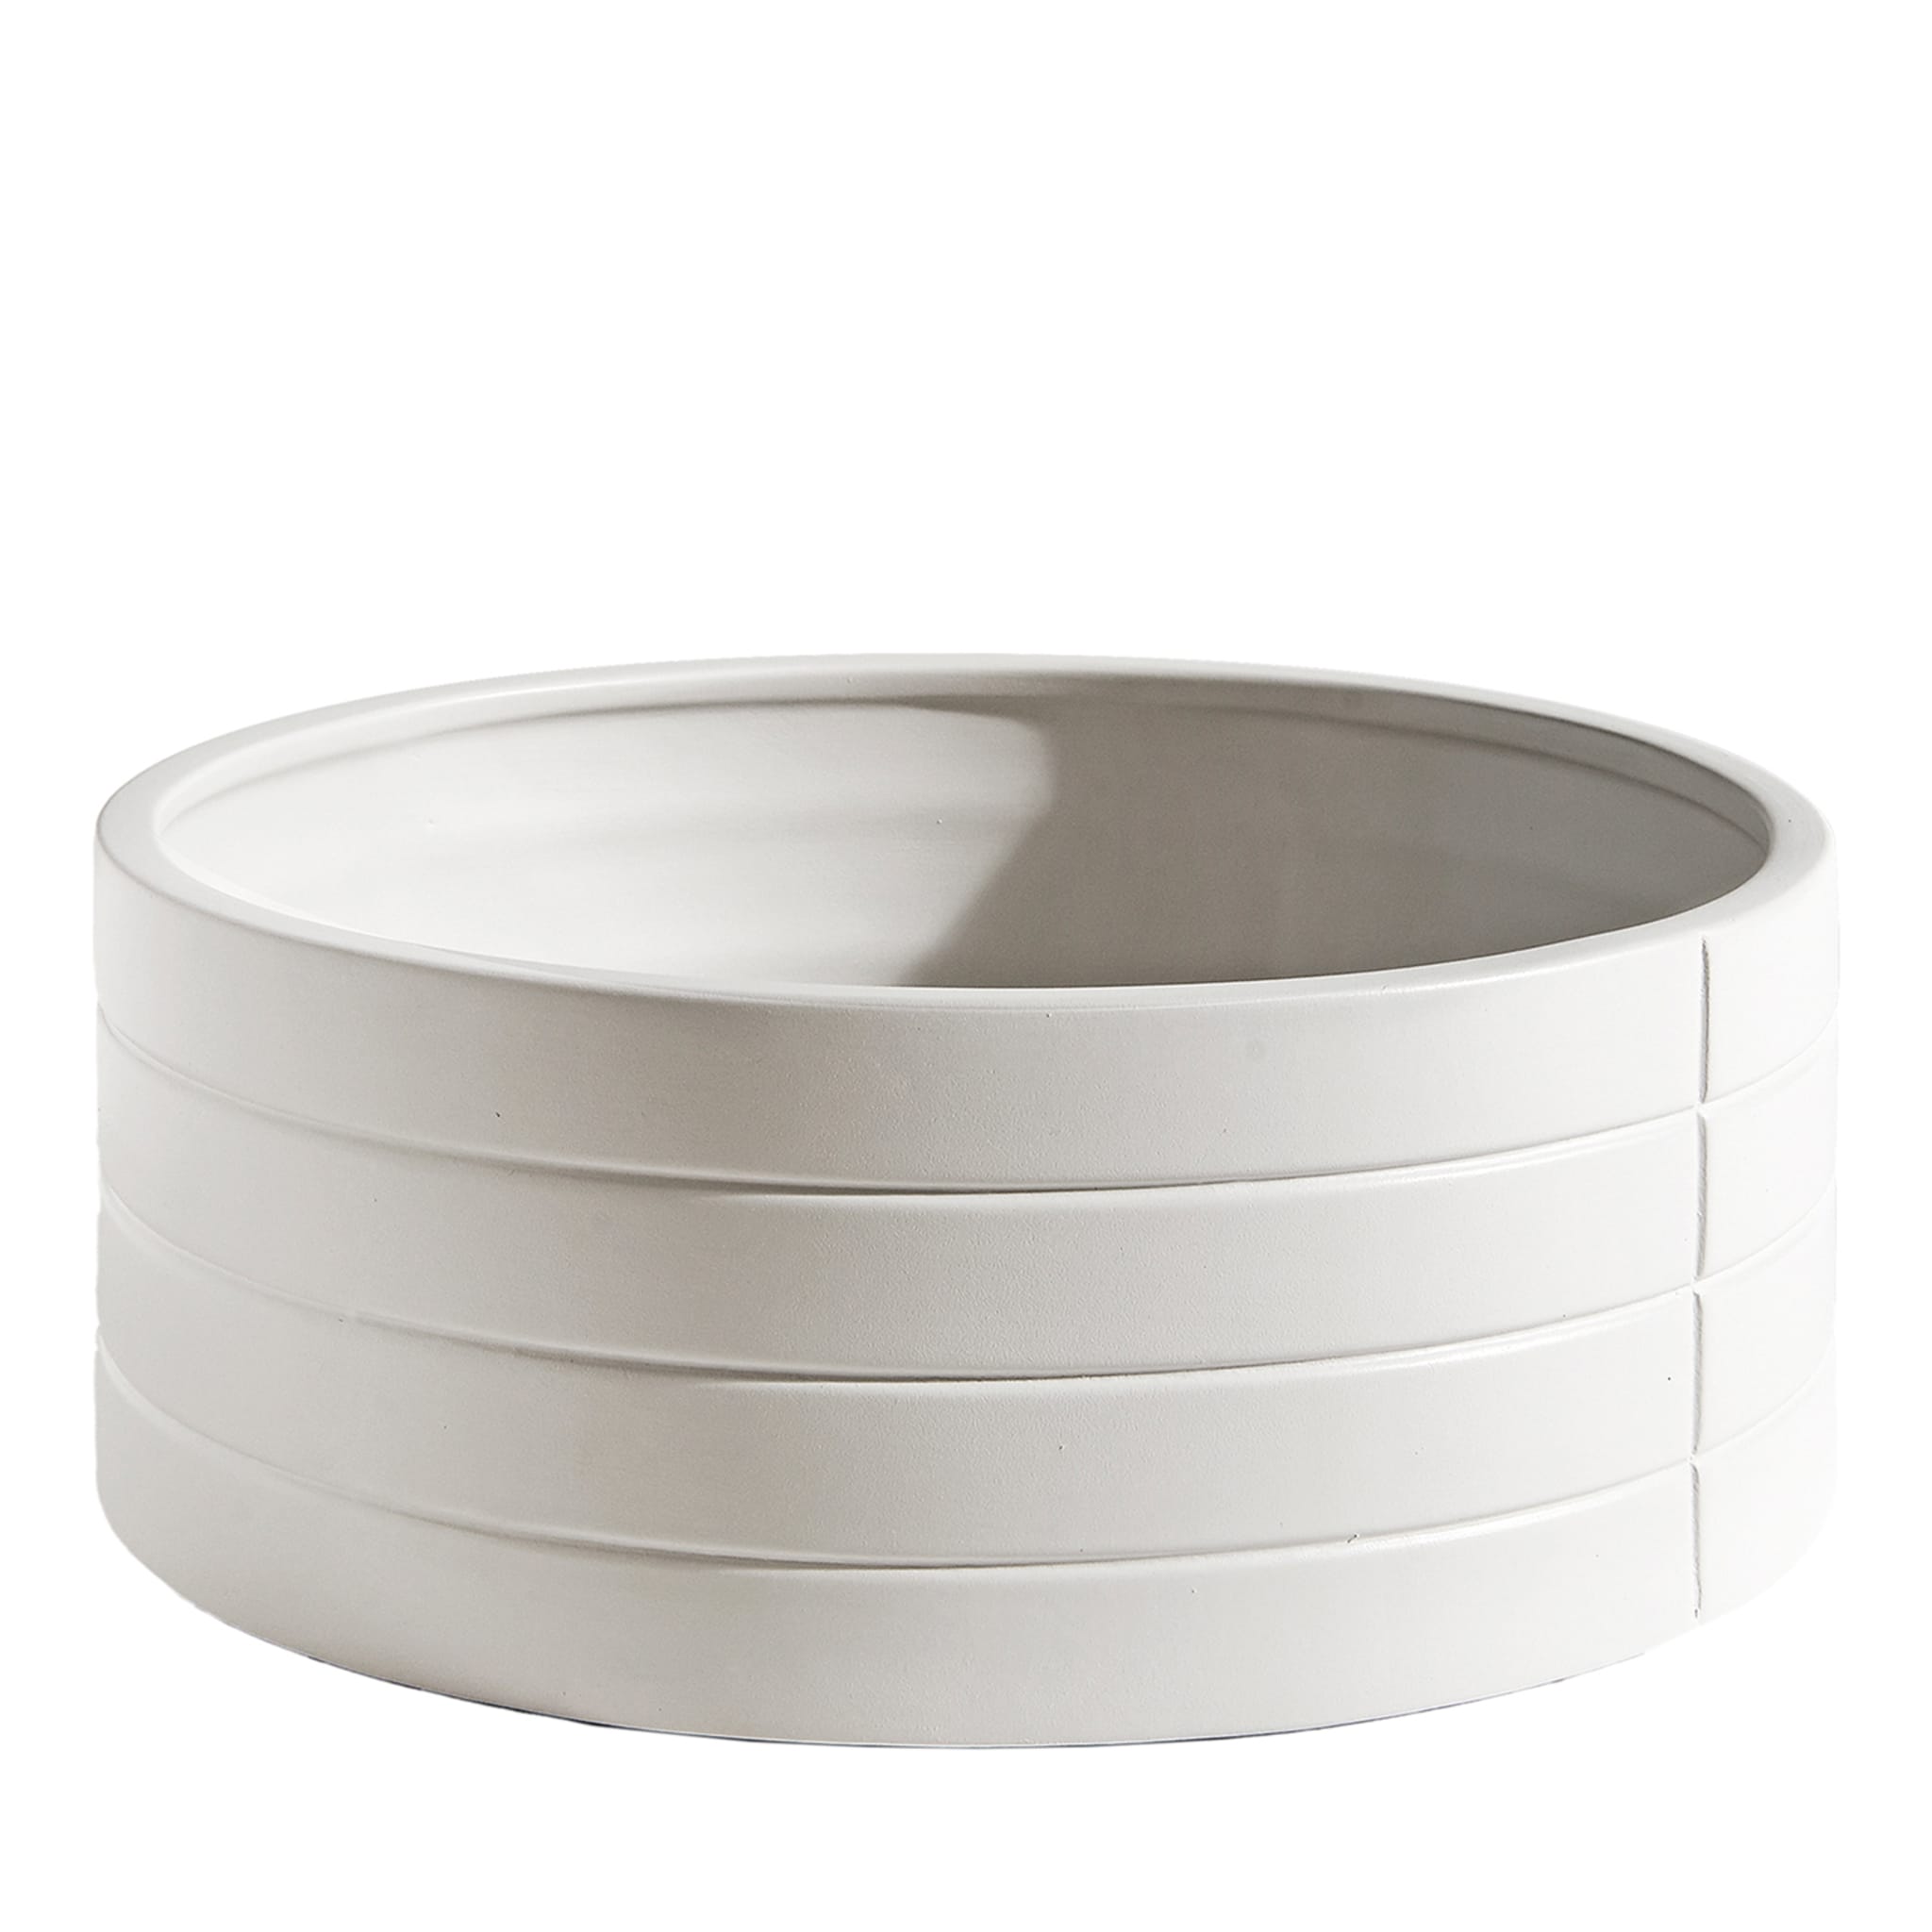 Rikuadra White Ceramic Vase #1 - Main view